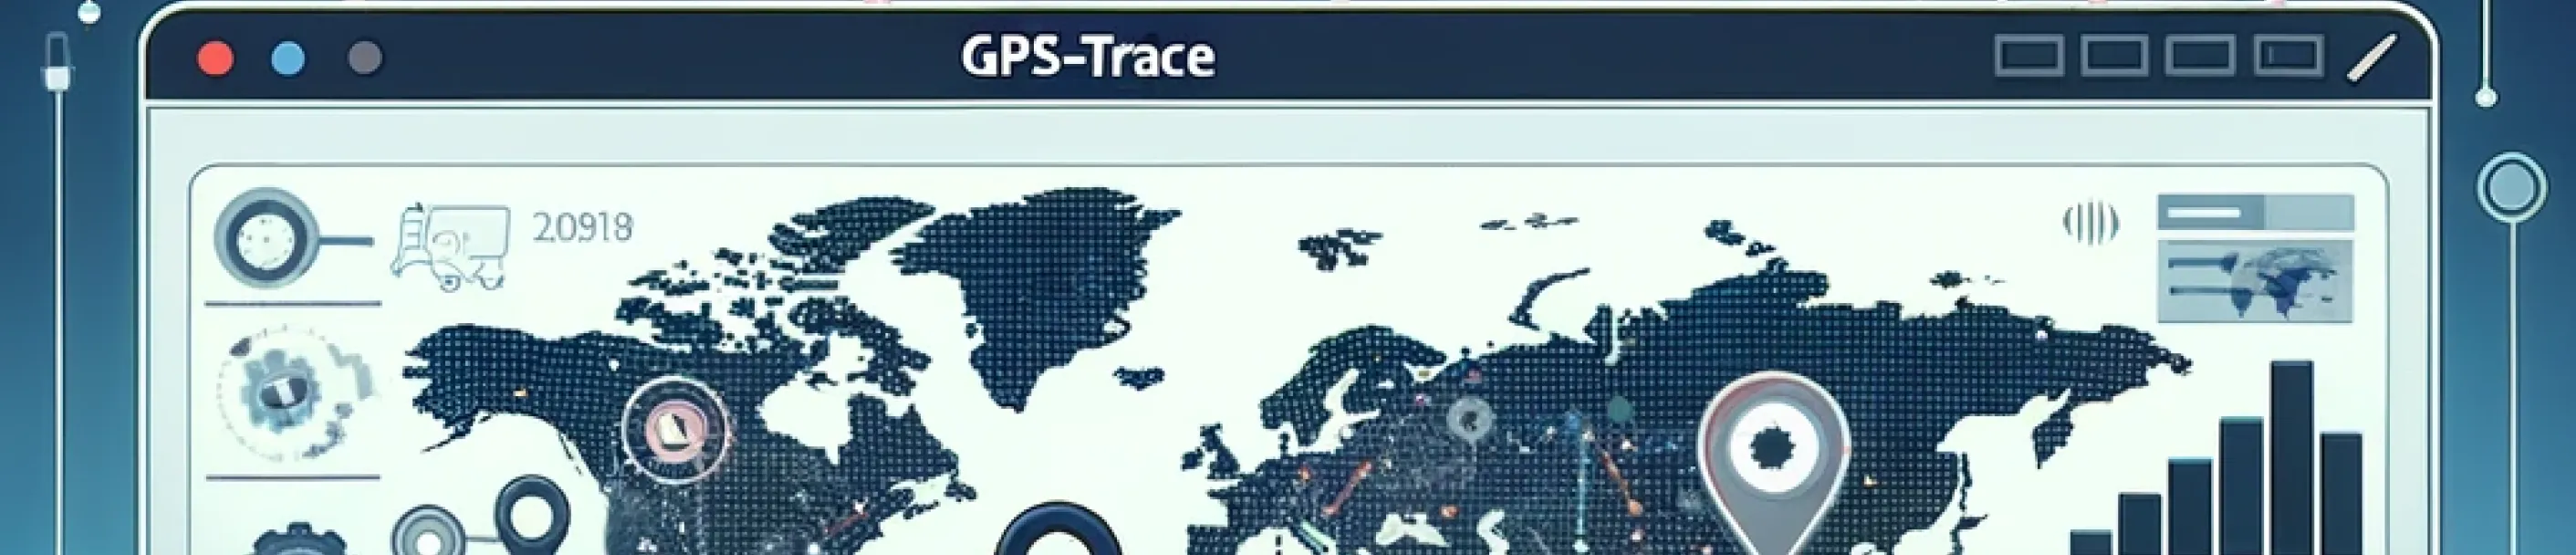 Rede de parceiros GPS-Trace